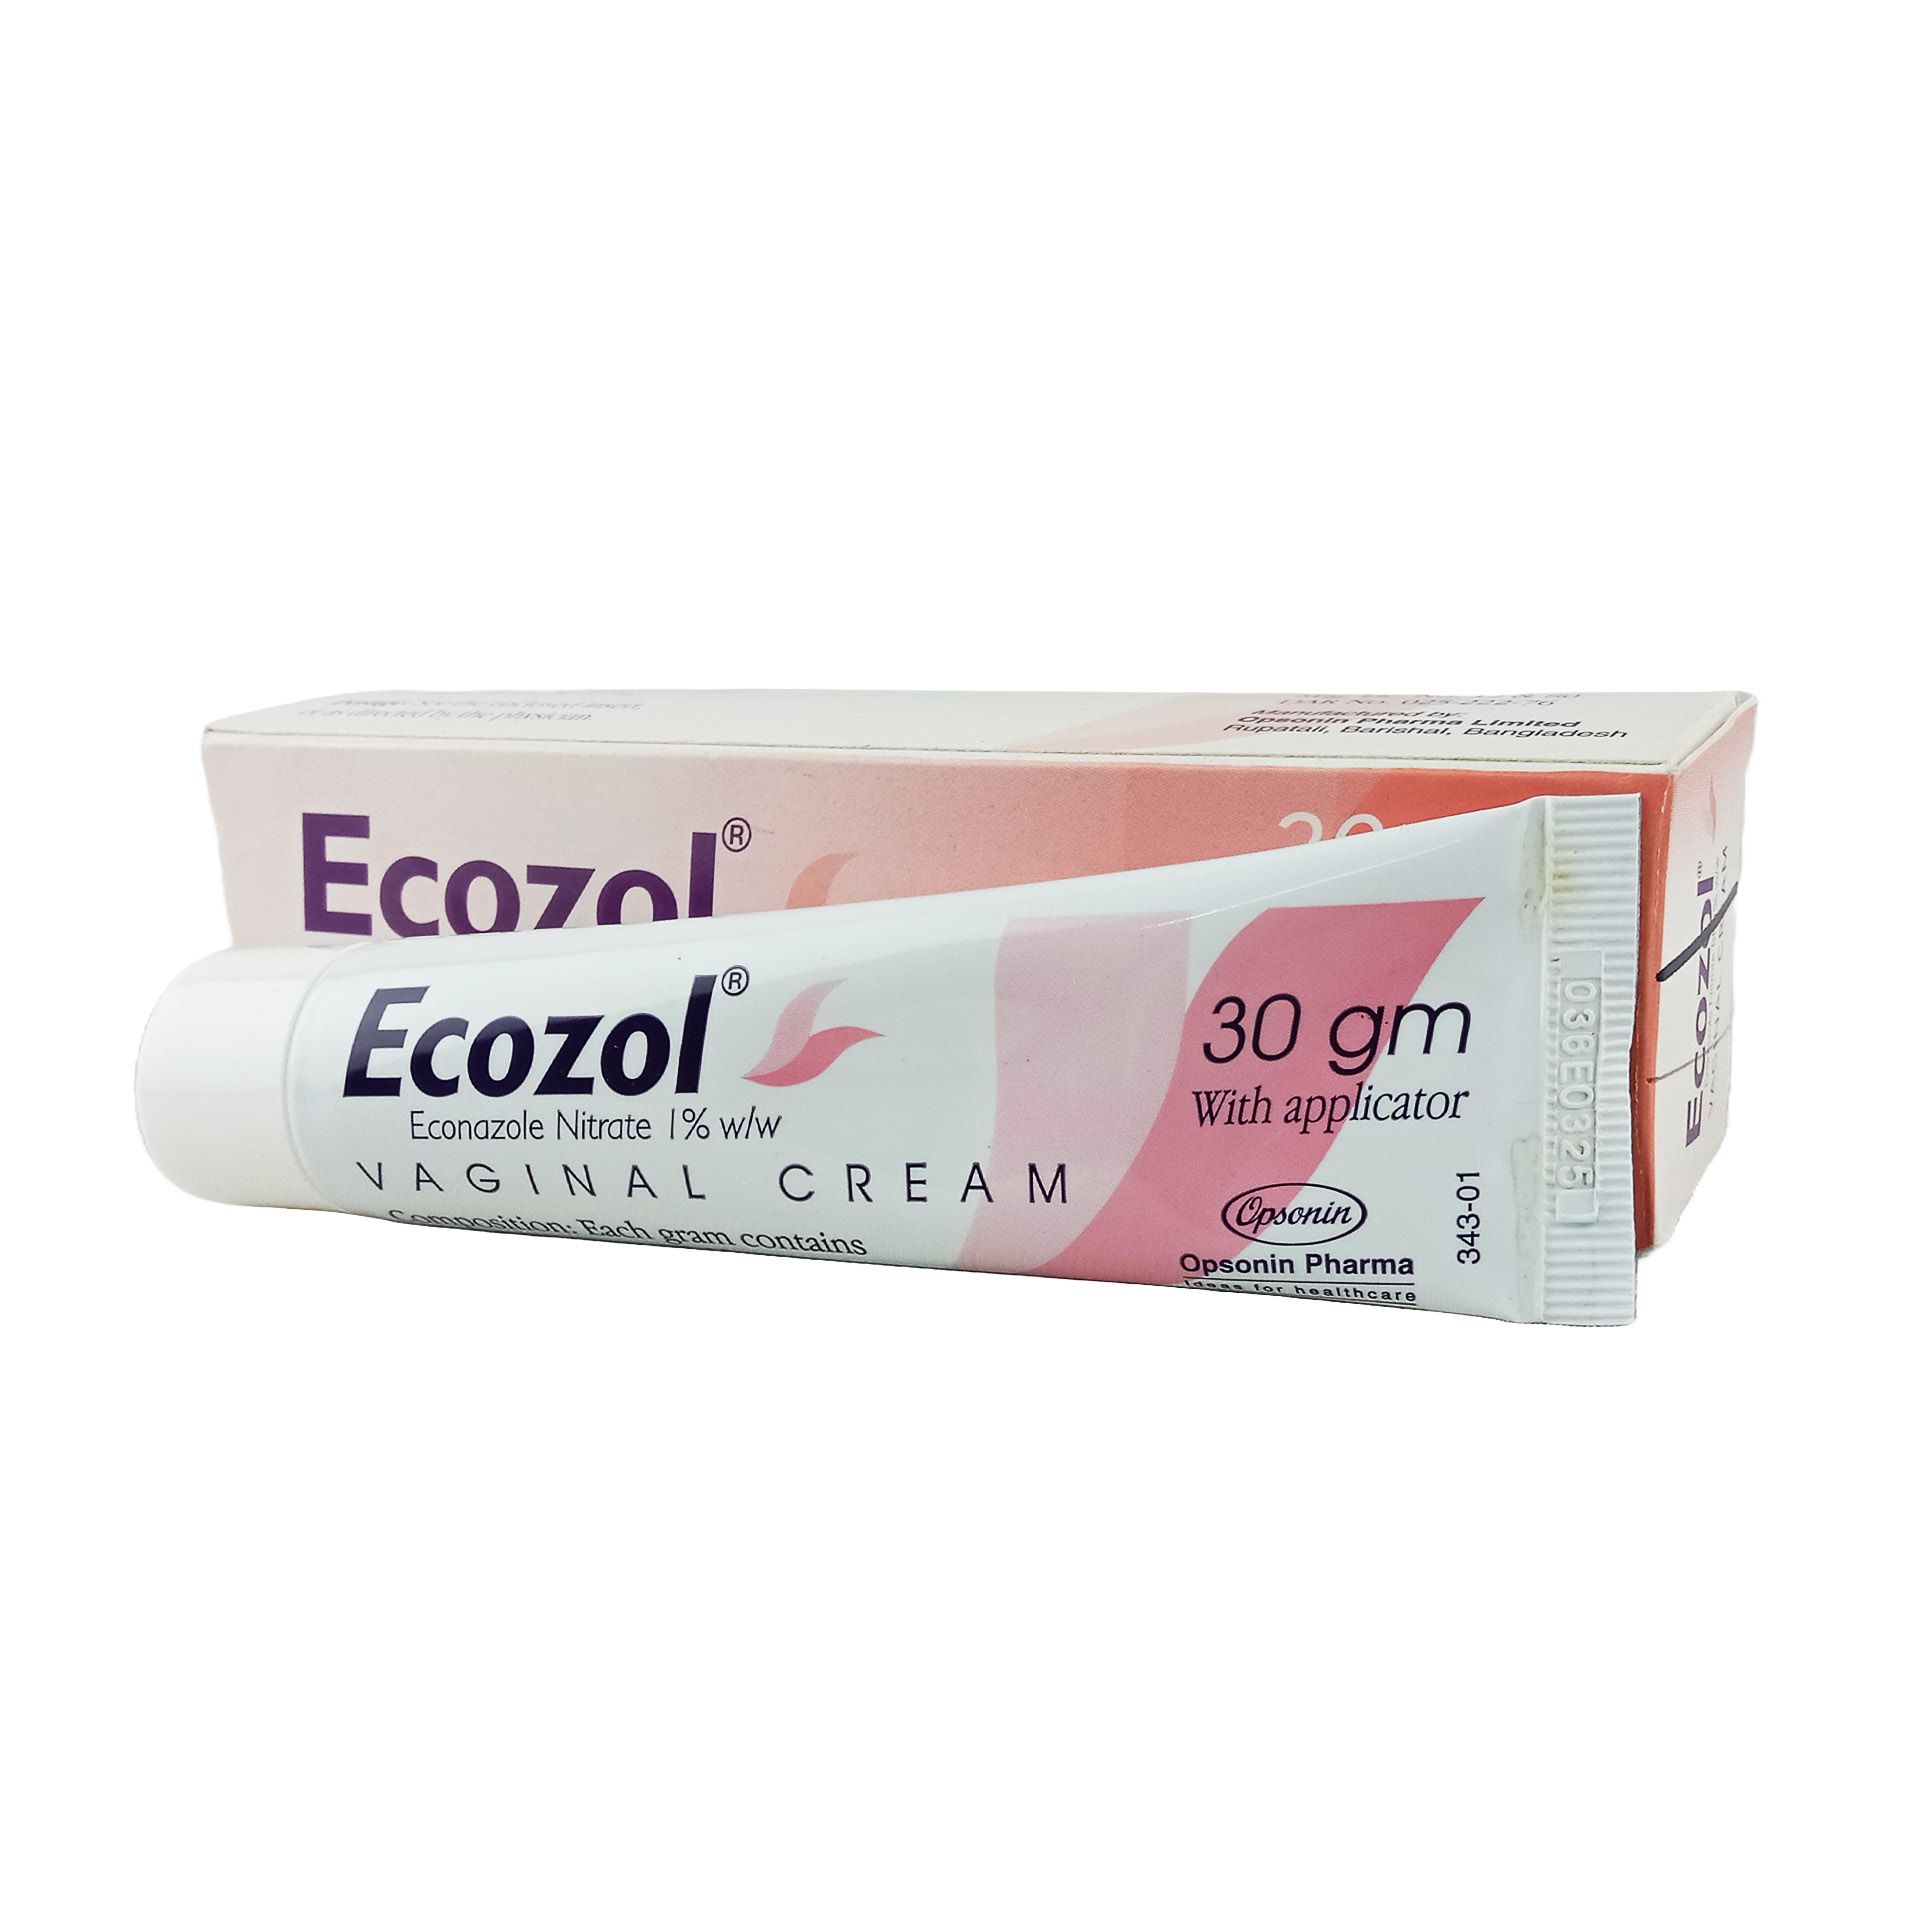 Ecozol Vaginal Cream 1% Cream